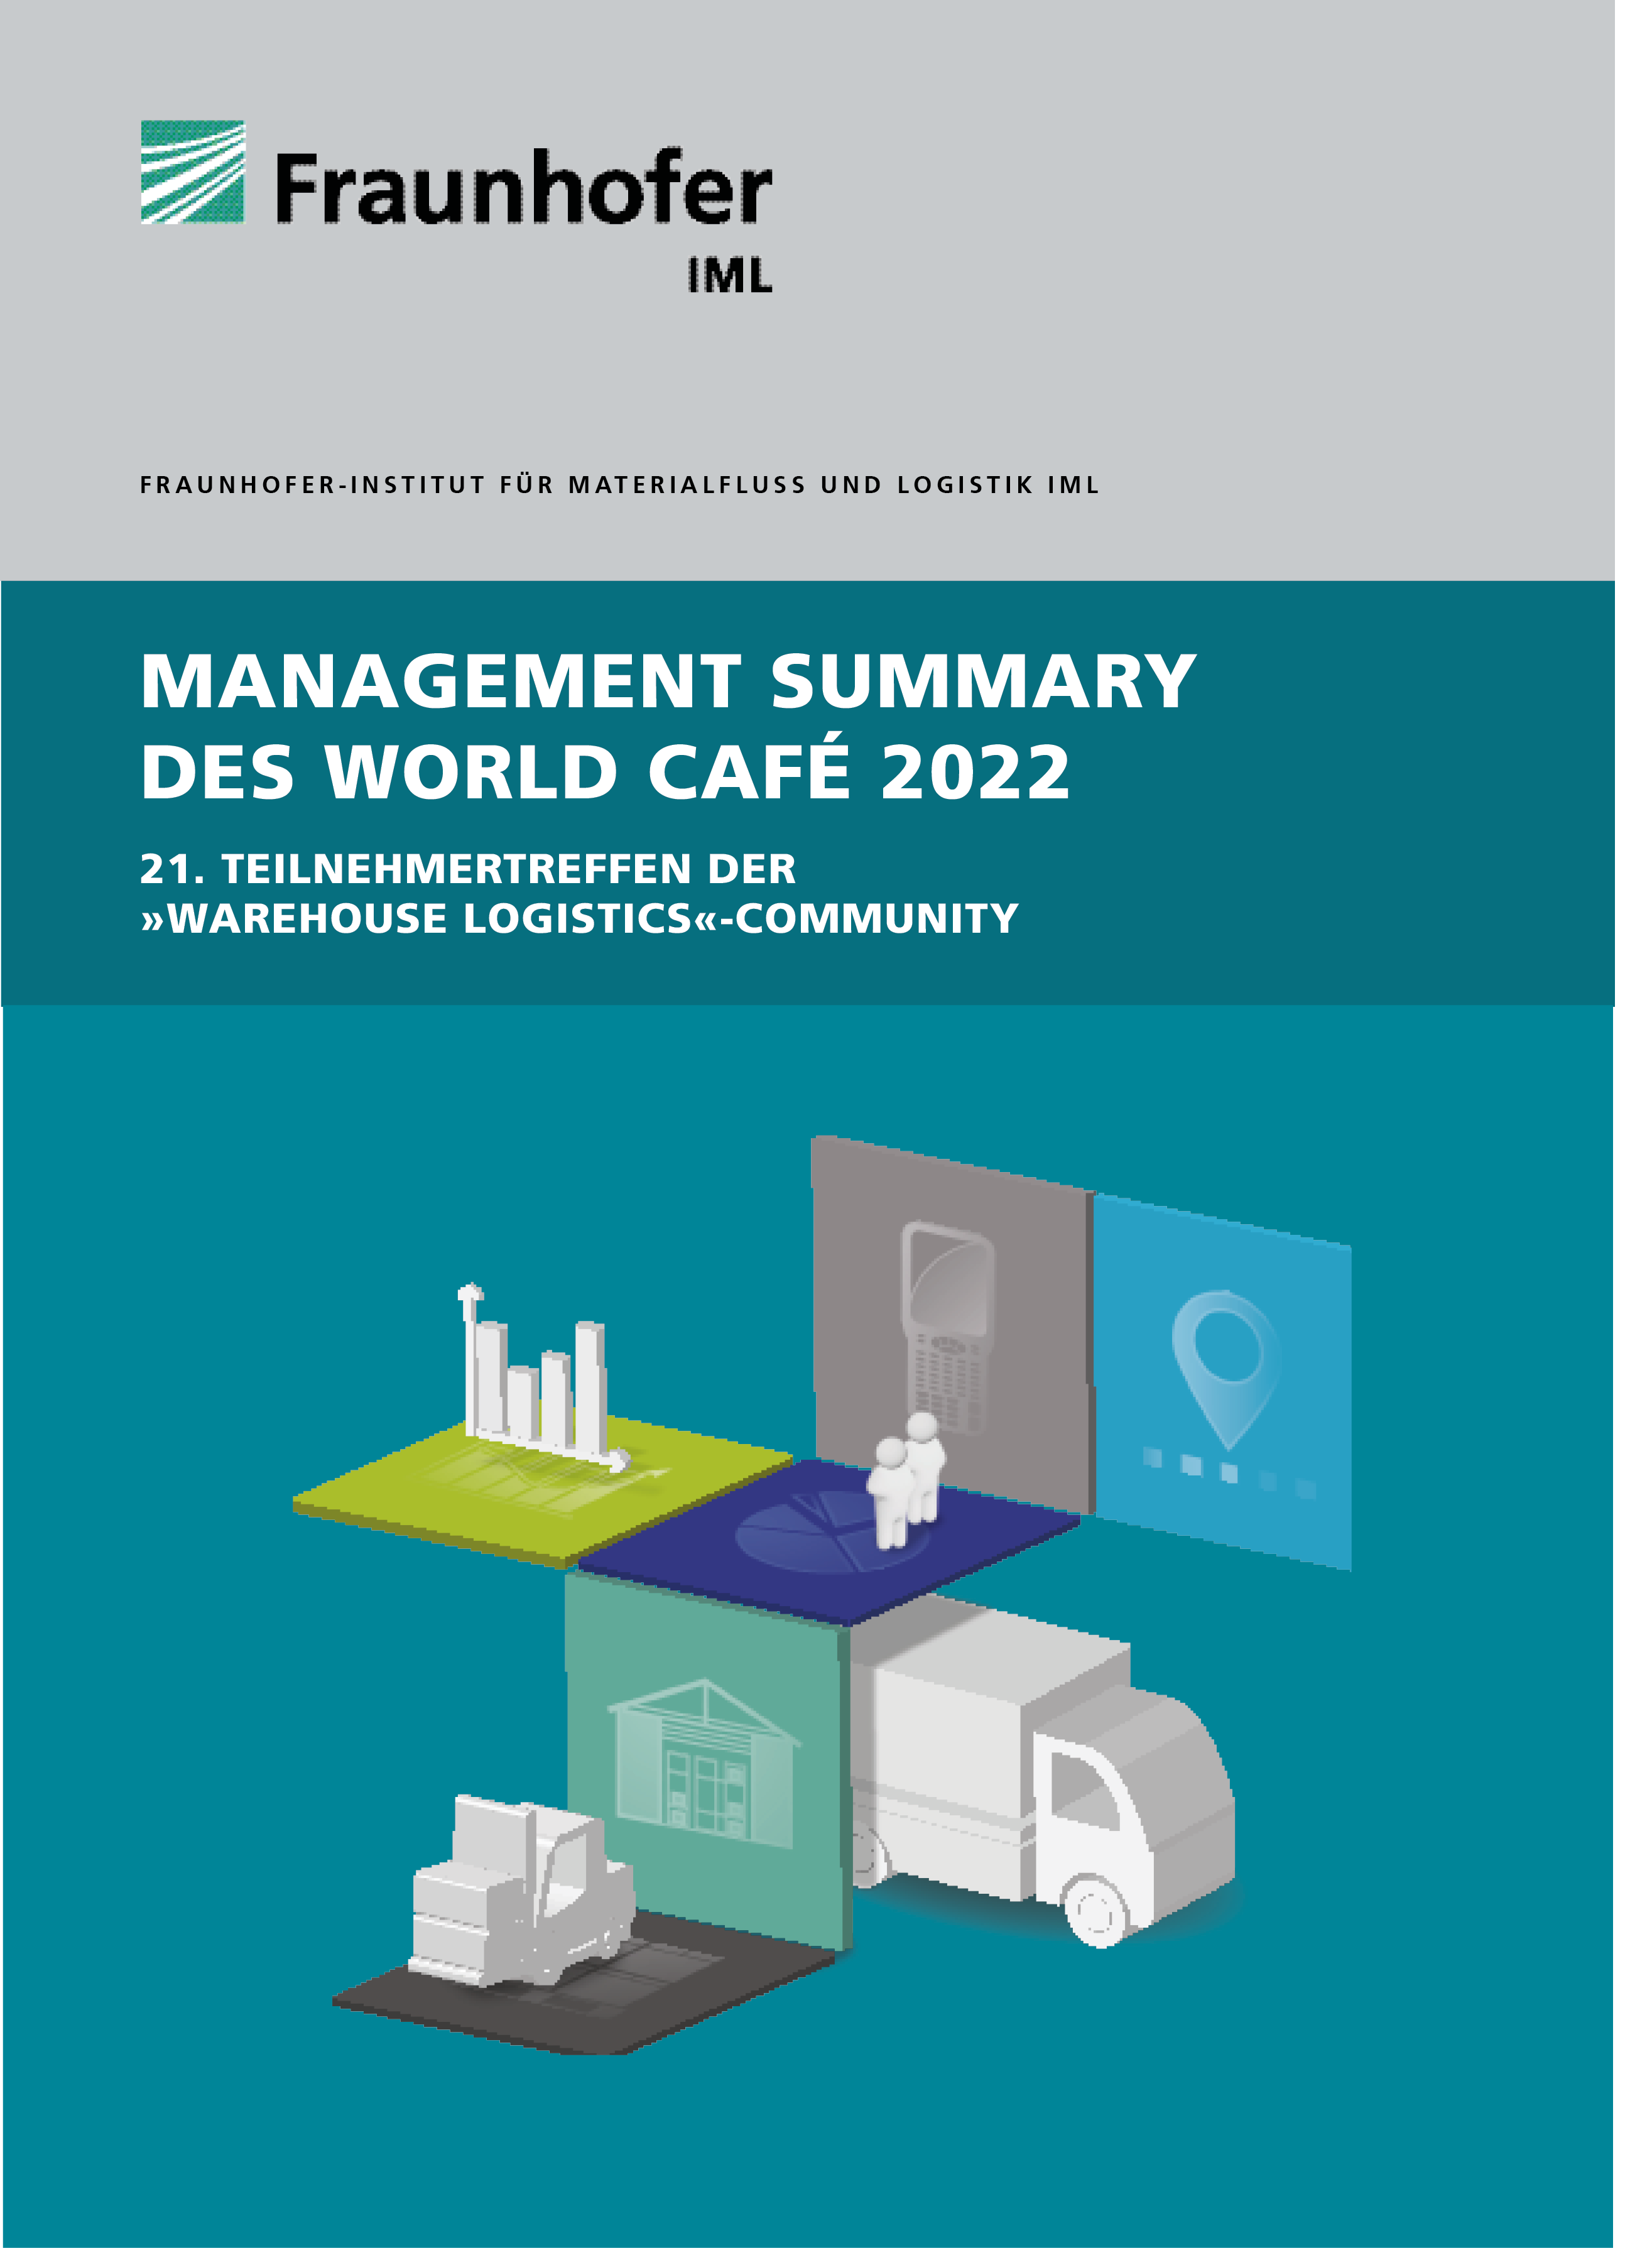 warehouse-logistics Management Summary des World Cafe 2022